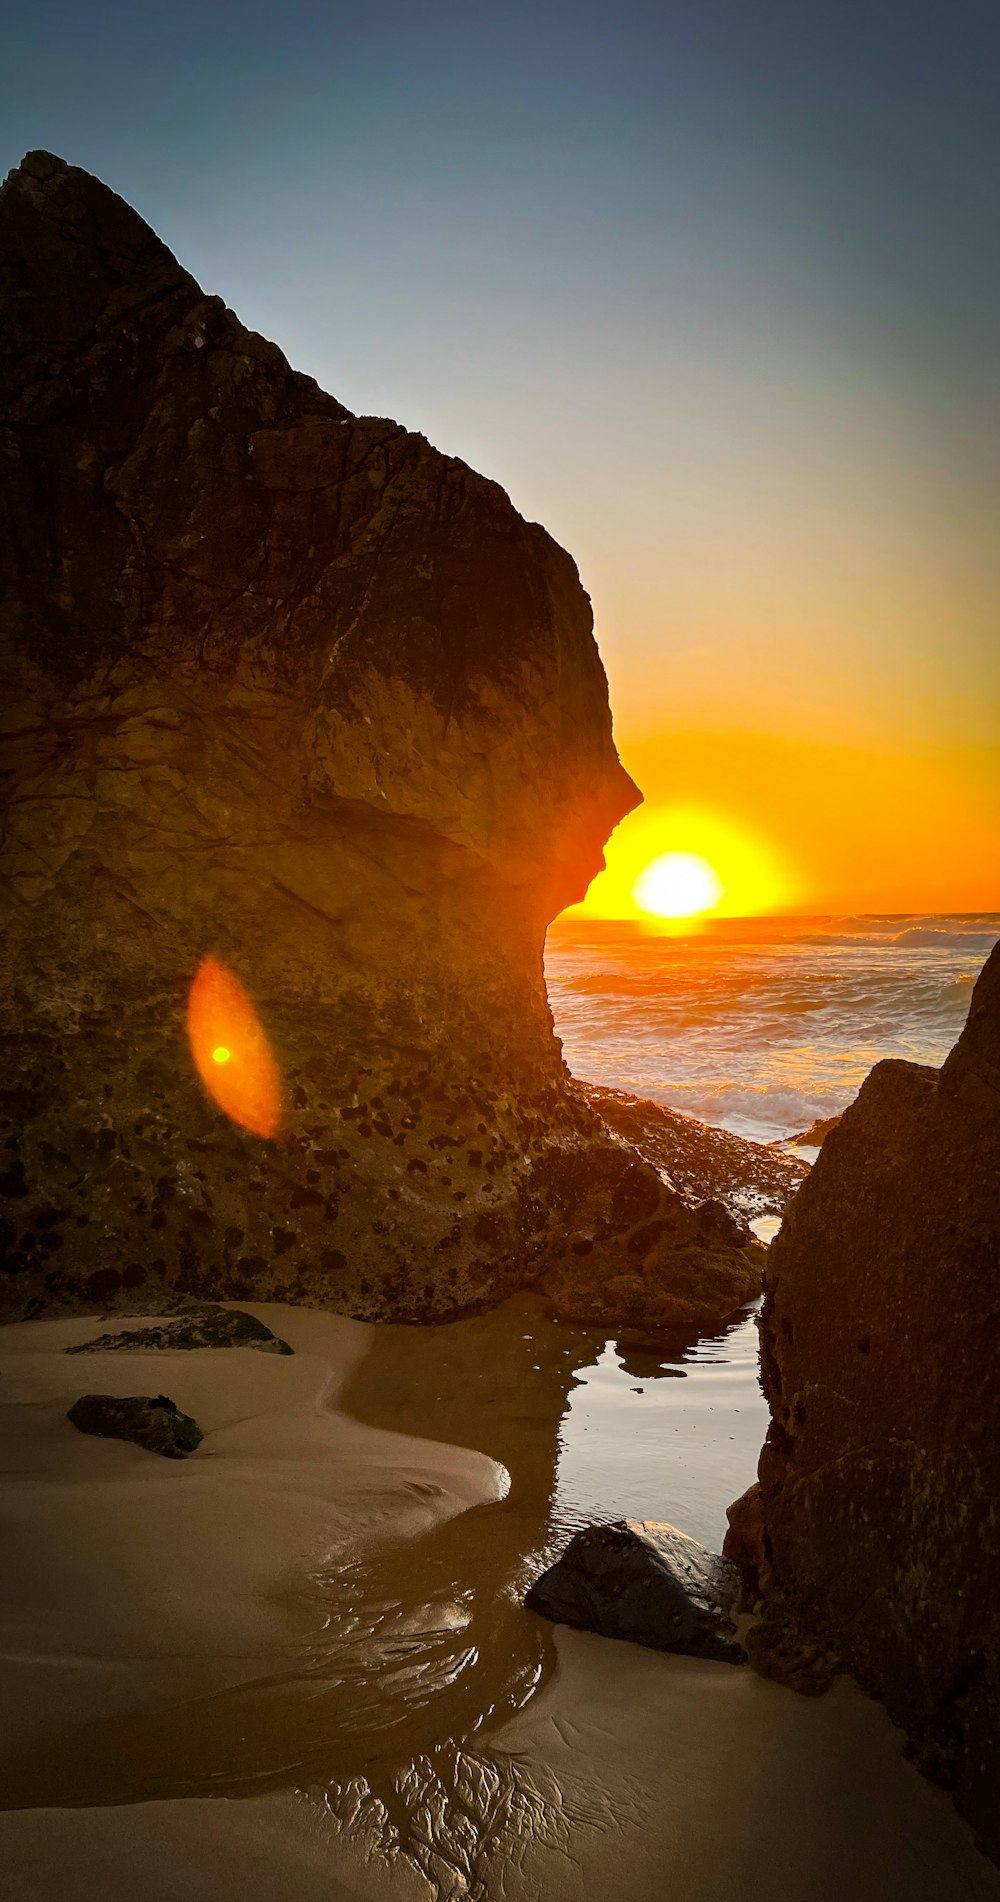 a sunset over a rocky beach